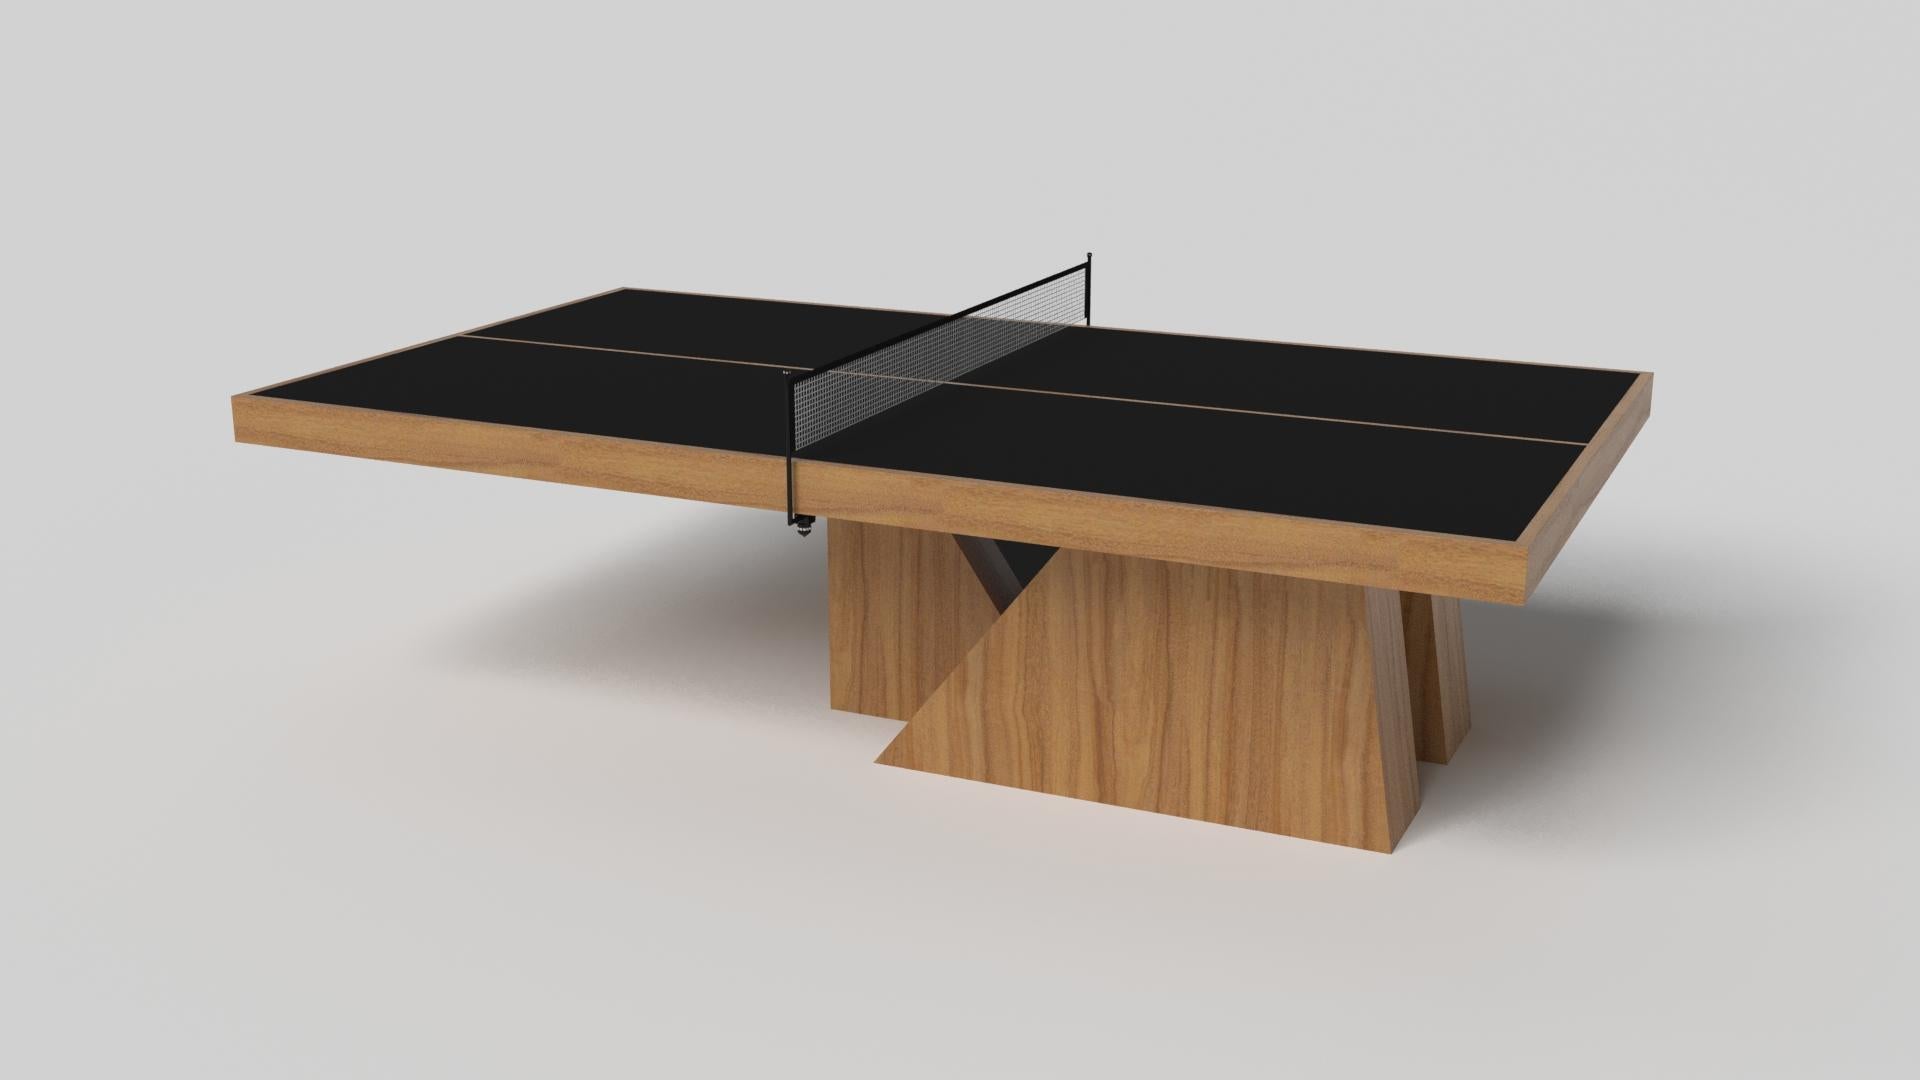 Une base asymétrique crée une silhouette flottante, faisant de la table de ping-pong Stilt en chrome et noyer un ajout fascinant et contemporain à la maison moderne. Fabriquée en métal durable avec des accents en bois de noyer, cette luxueuse table